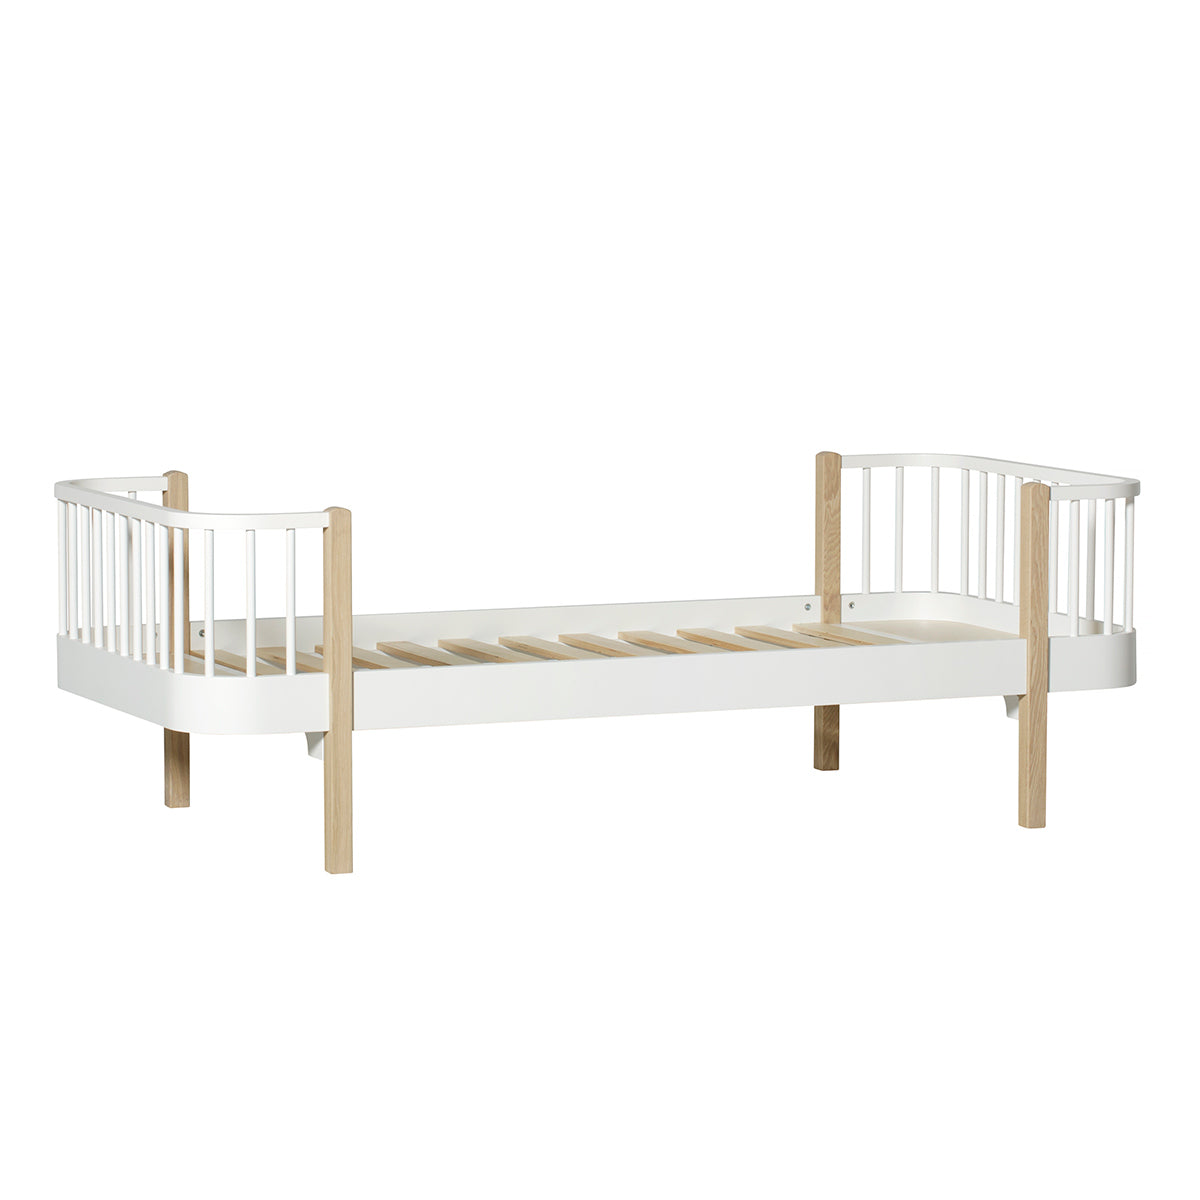 Oliver Furniture Wood Original single bed, 90 x 200cm, white/oak